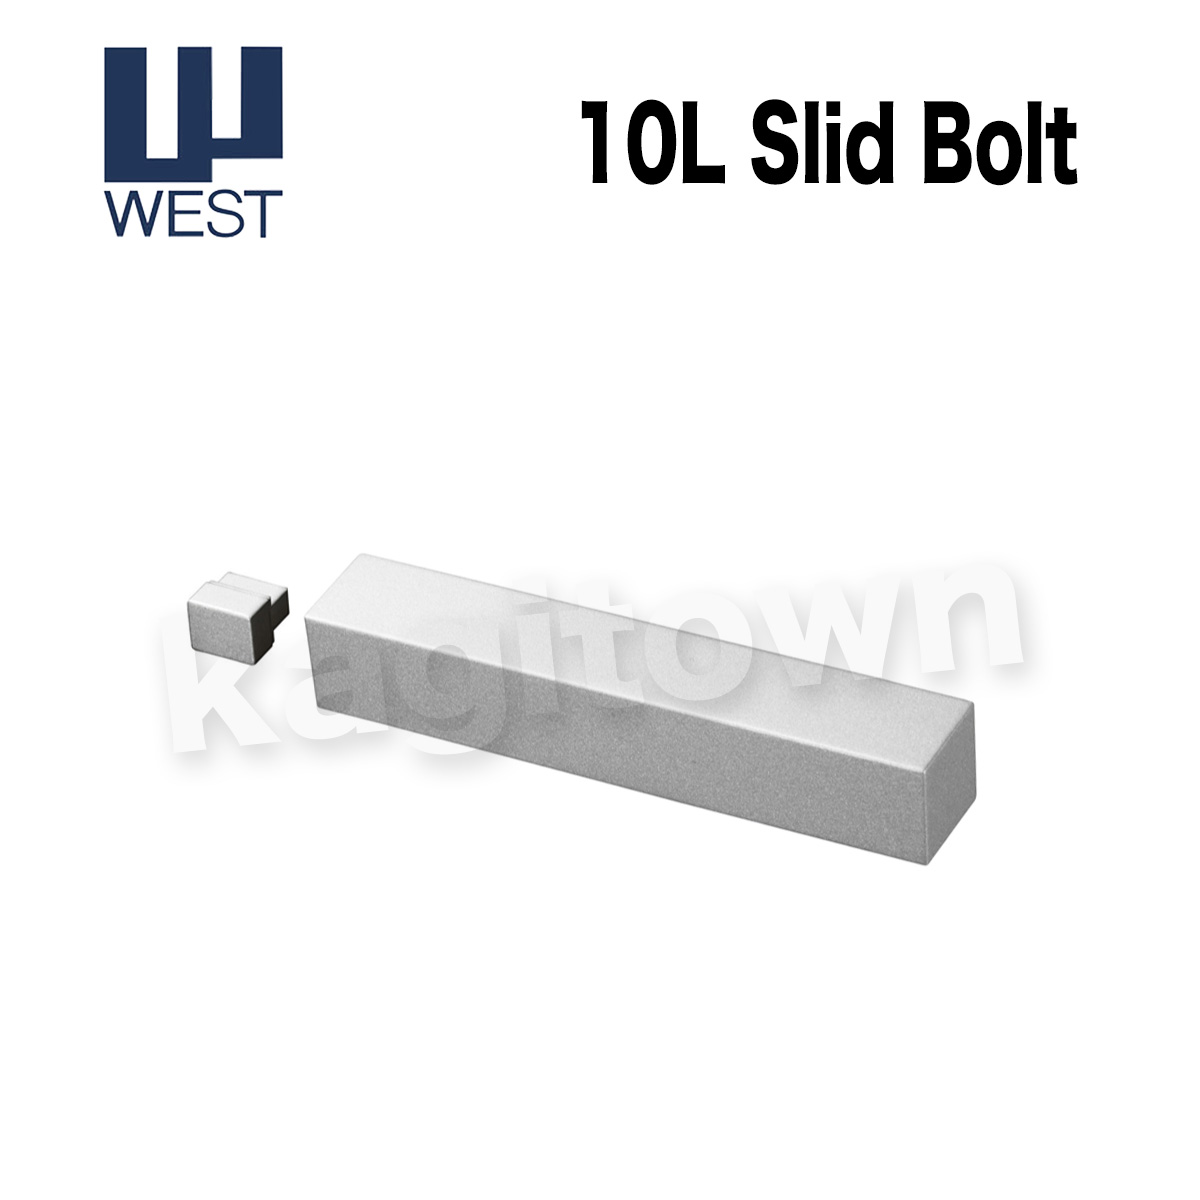 WEST 【ウエスト】スライドボルト[WEST-10L]mono 10L Slid Bolt・シリンダーの格安ネット通販【鍵TOWN】